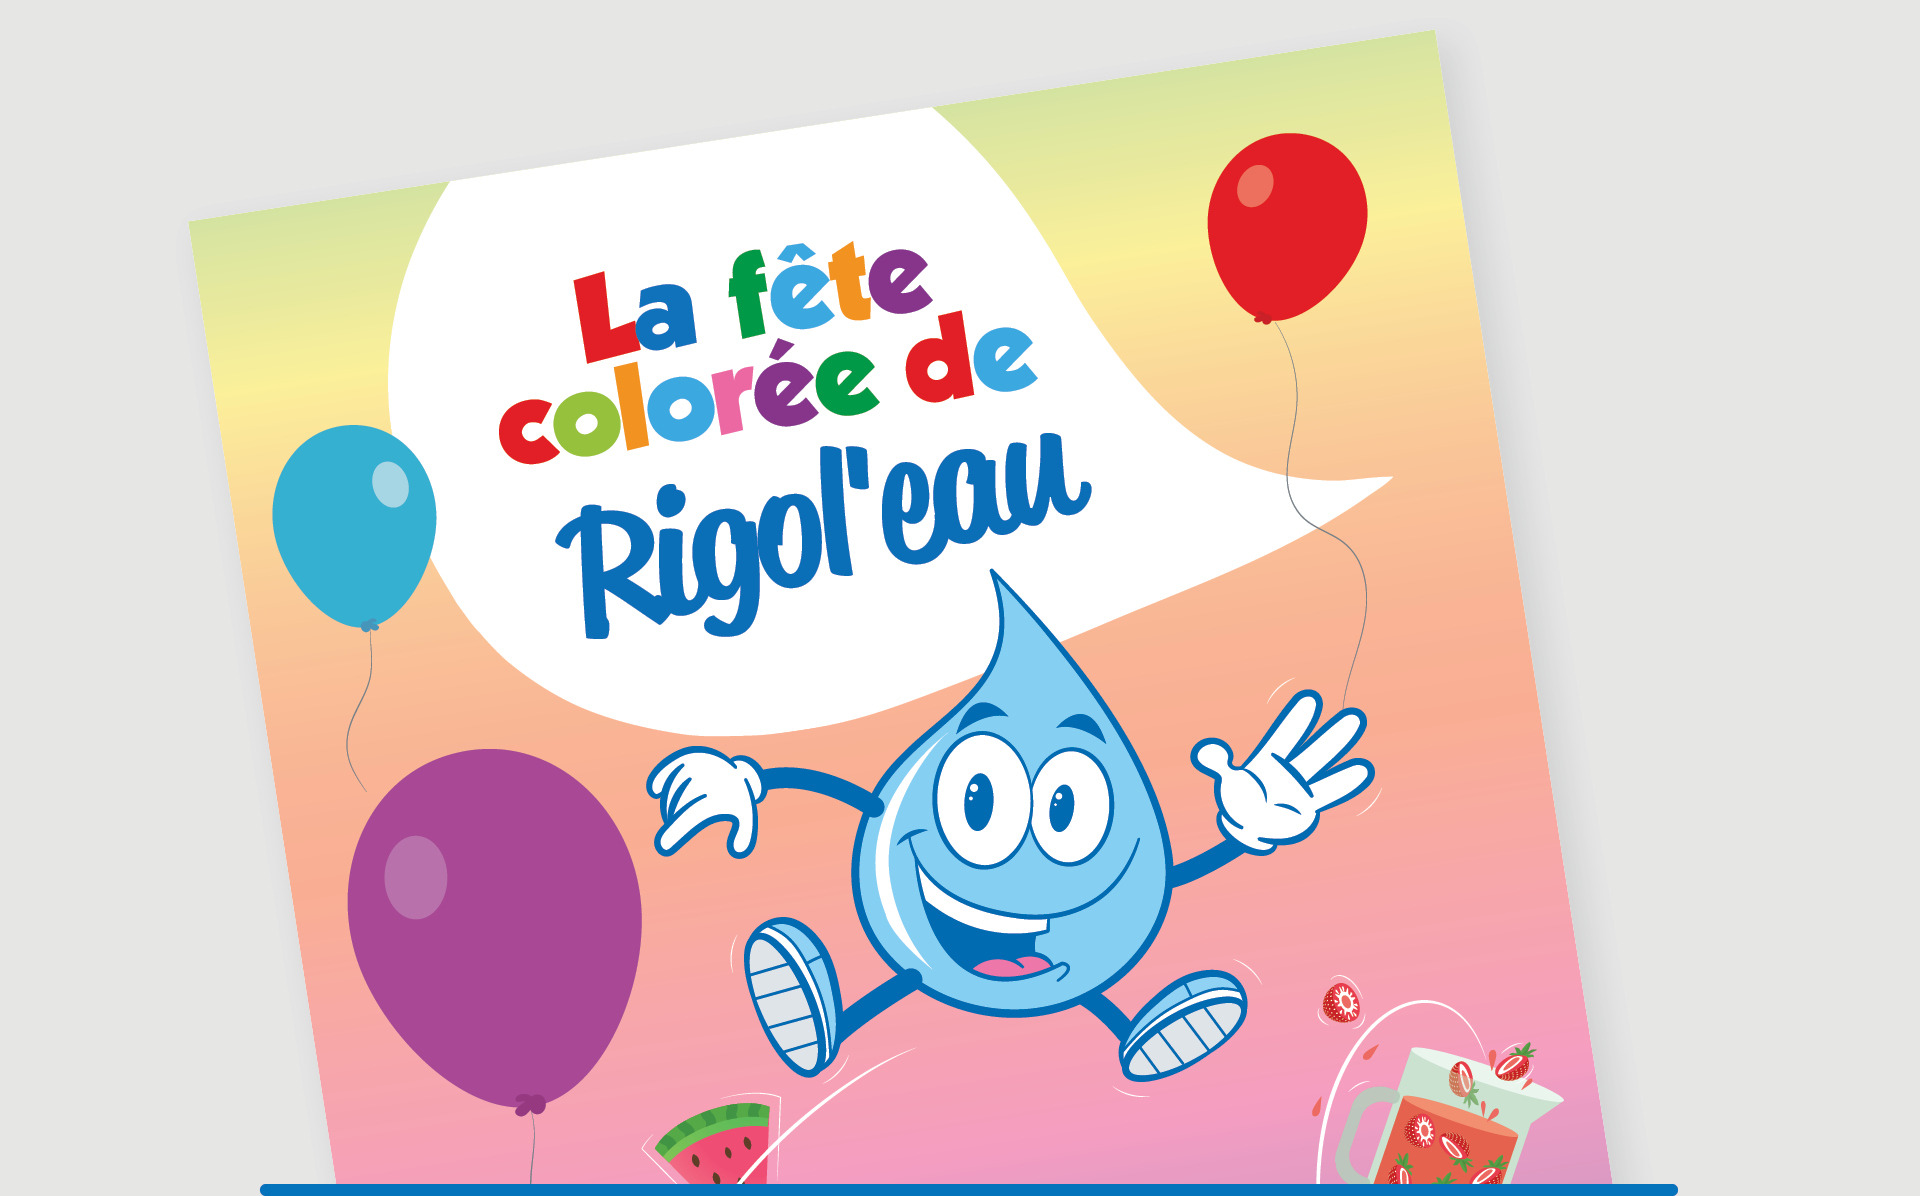 La fête colorée de Rigol’eau (Nouveau!)